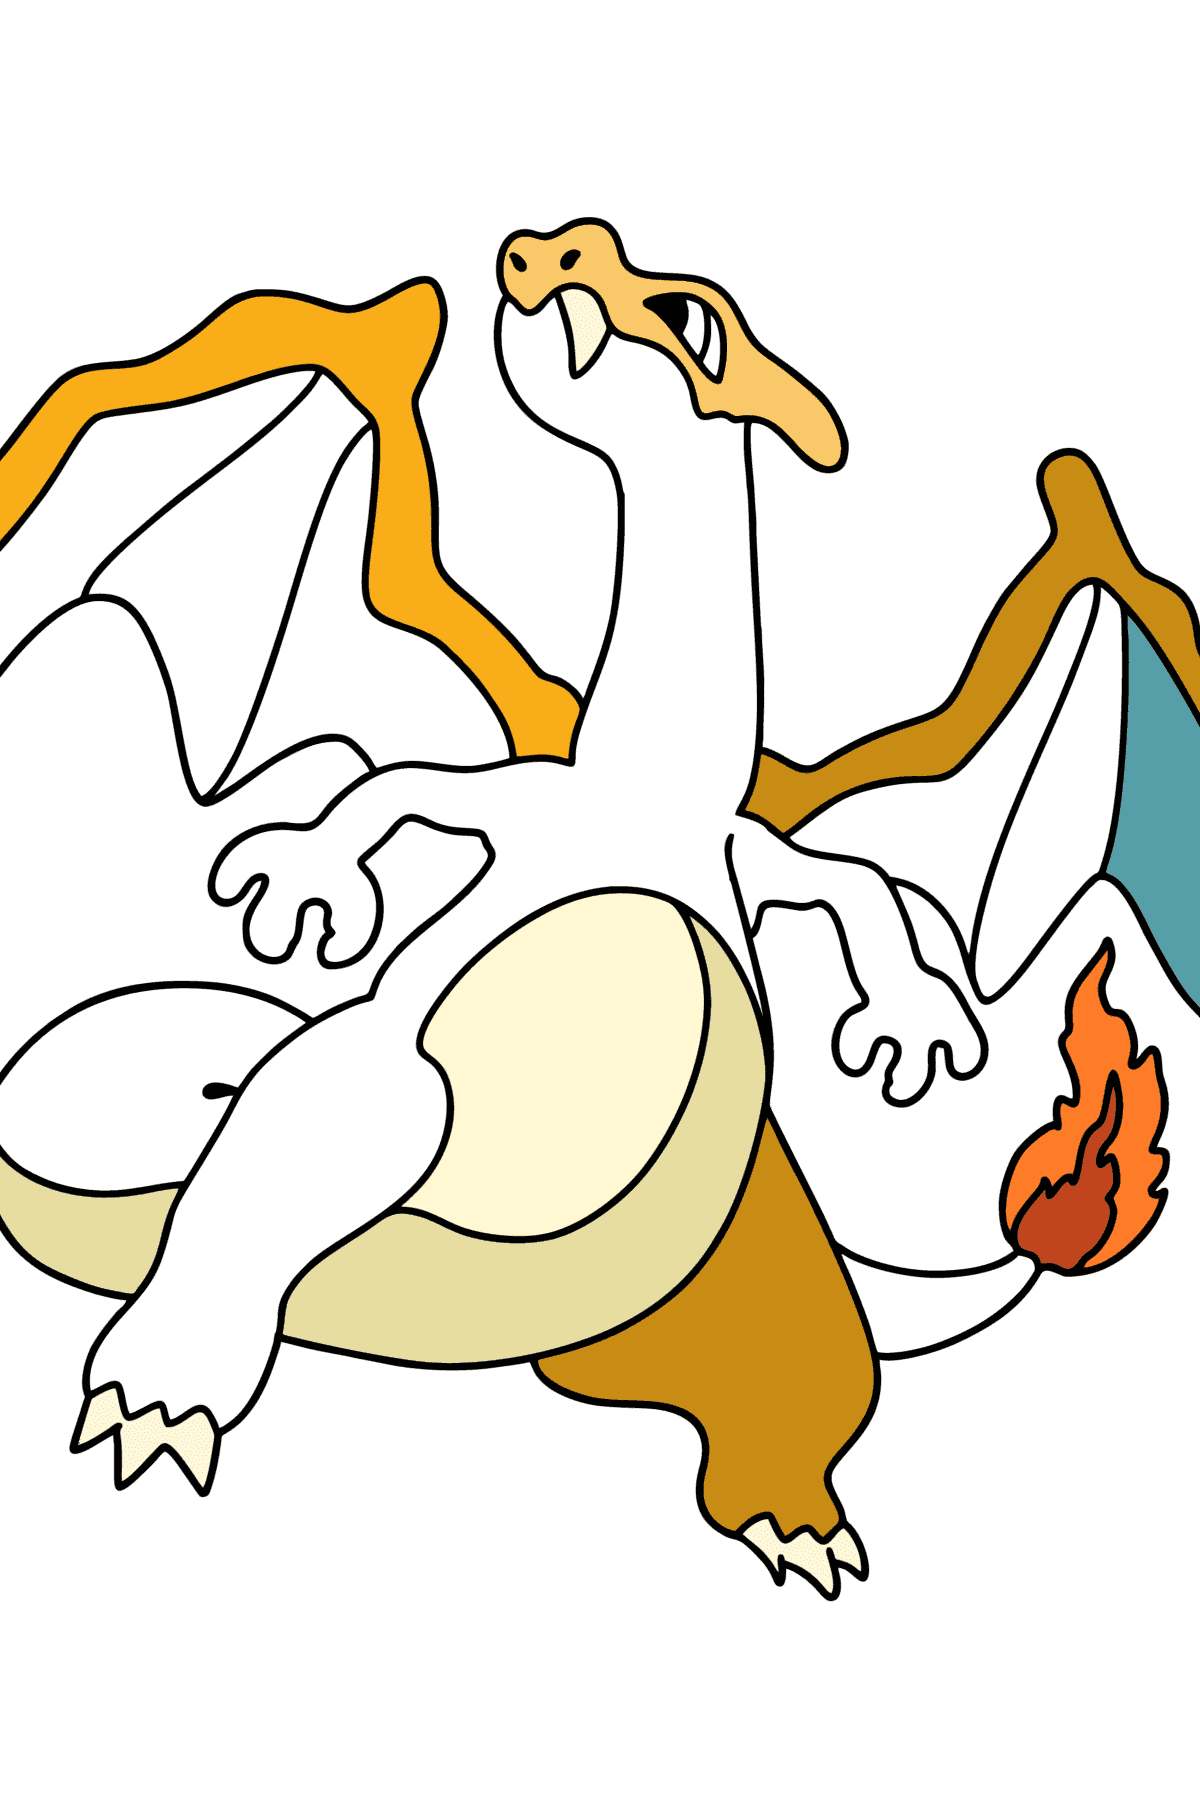 Desenho de Pokémon Go Charizard para colorir - Imagens para Colorir para Crianças